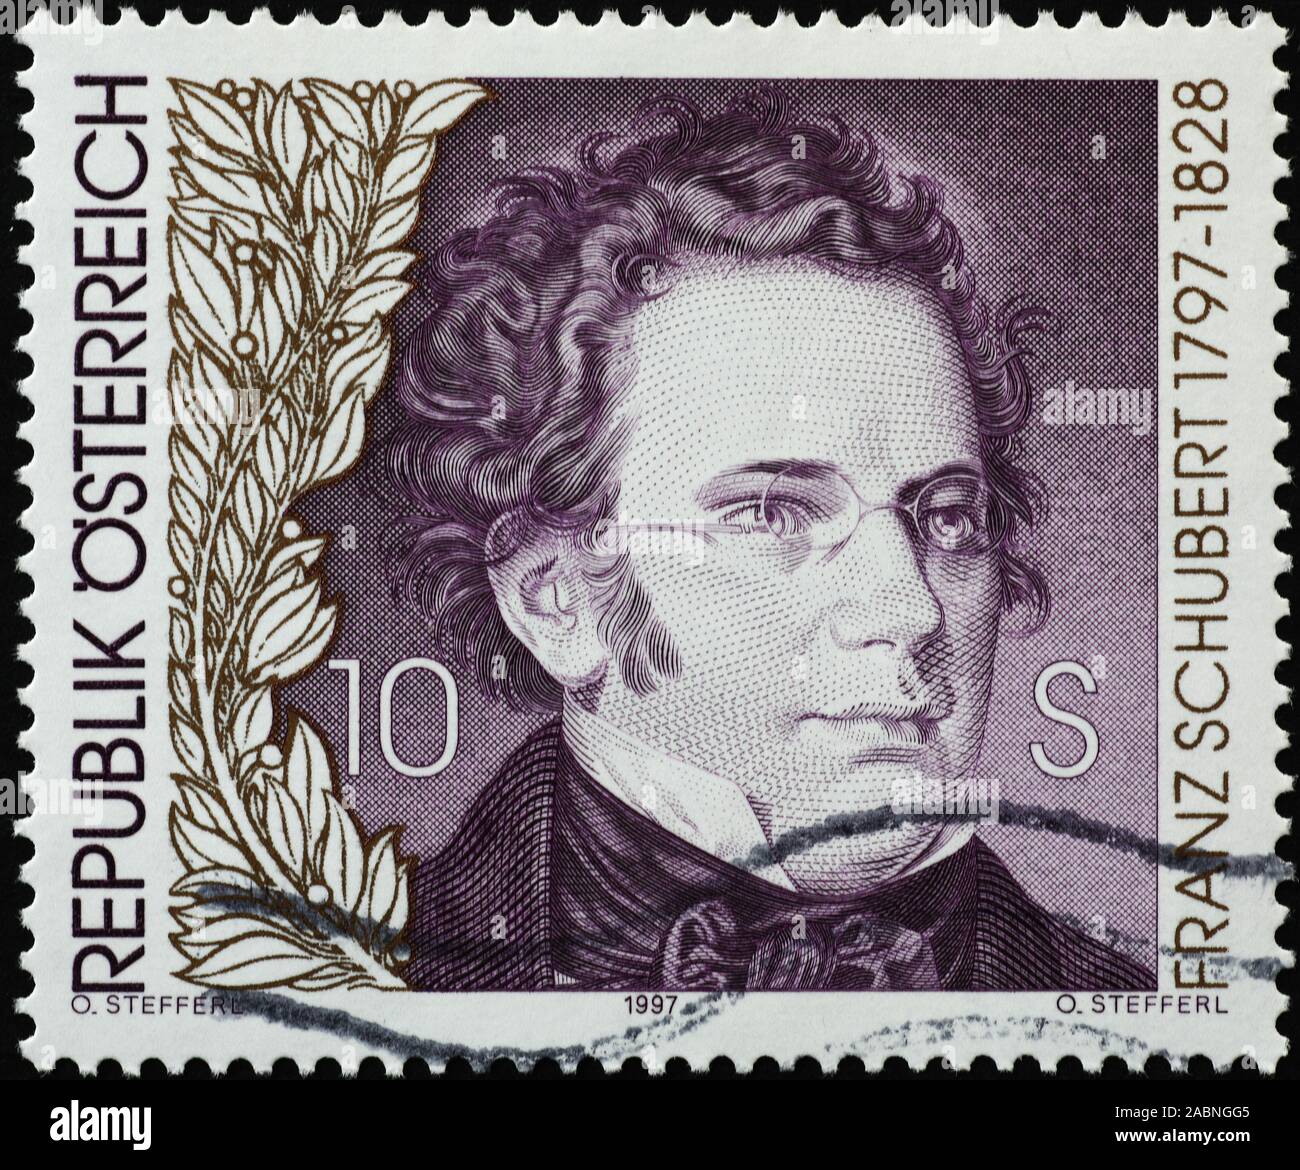 Portrait of Franz Schubert on austrian postage stamp Stock Photo